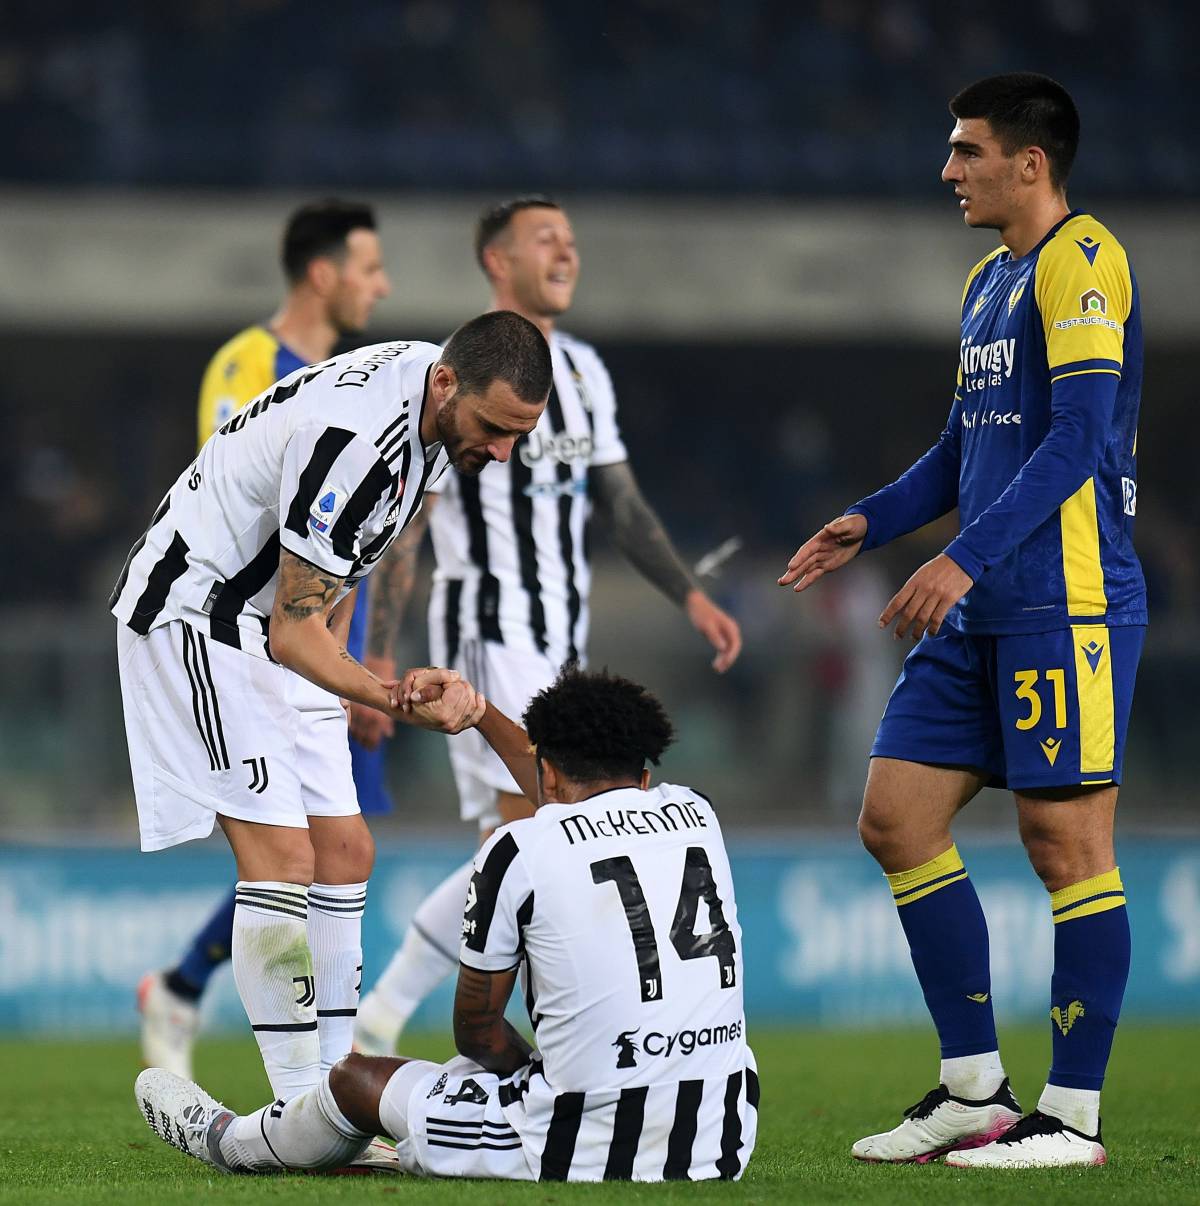 L'ex Barzagli stronca la Juventus: "Non sanno più difendere"